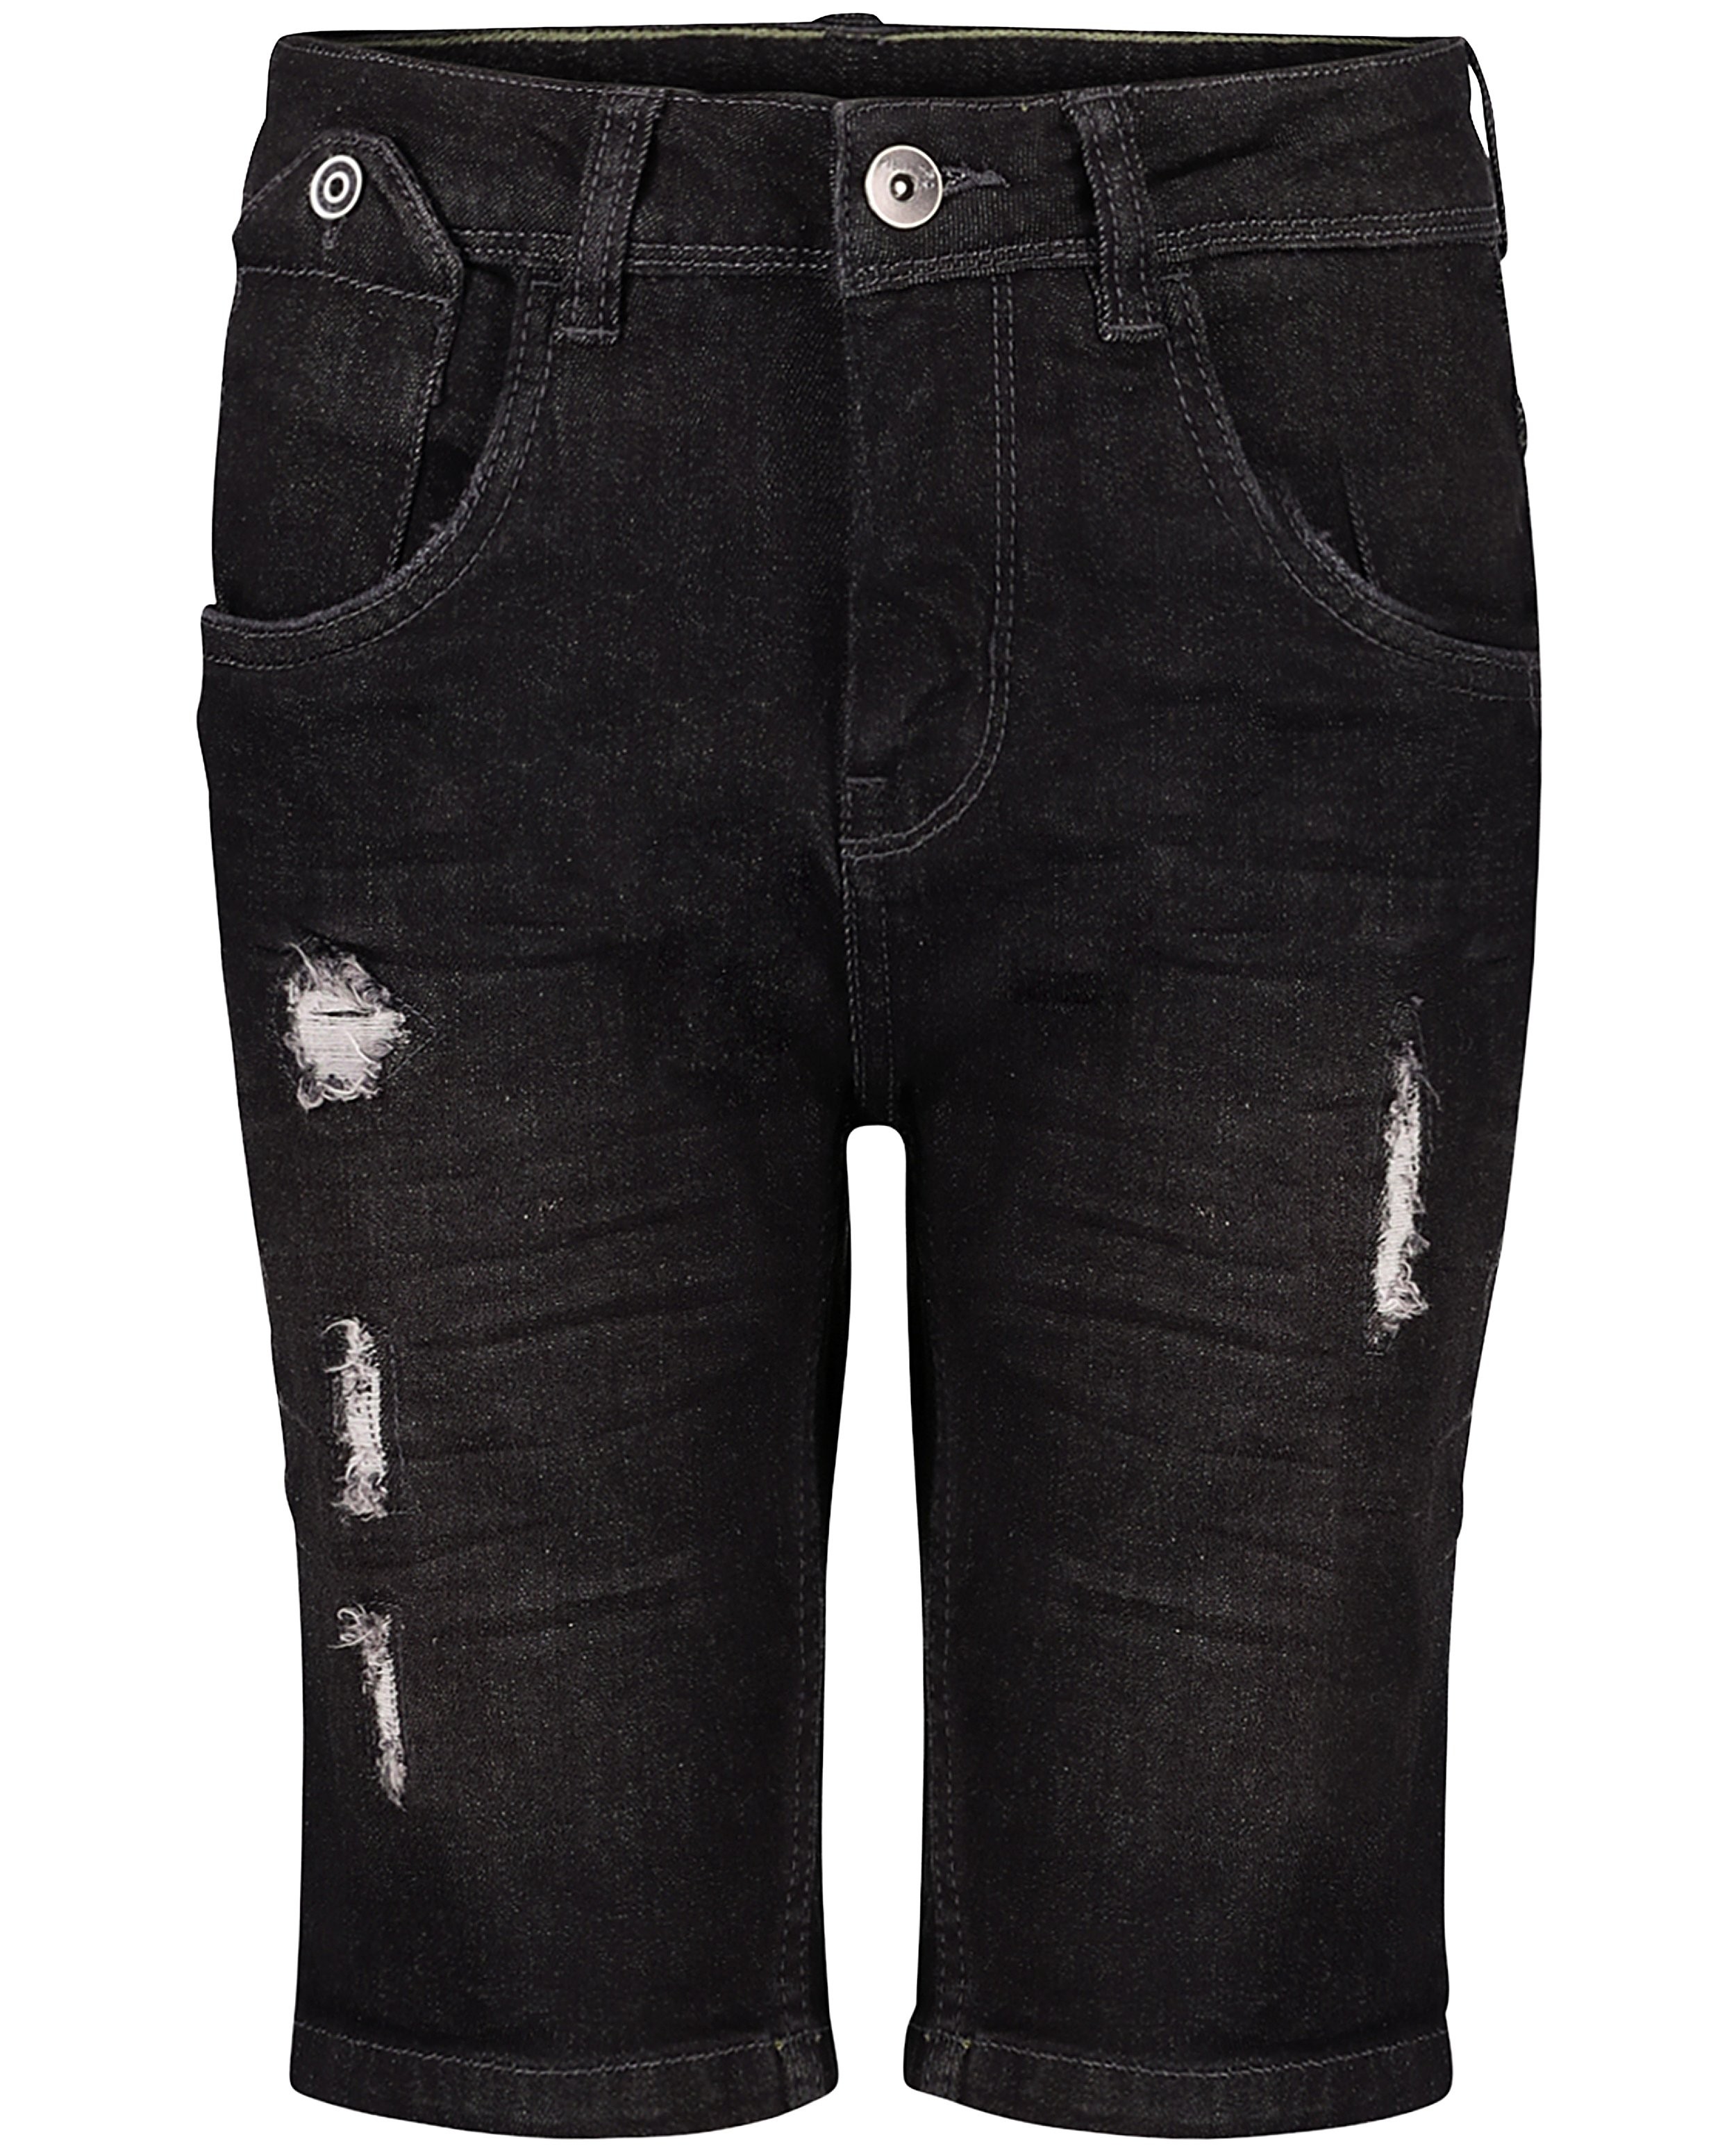 Shorten - Destroyed jeansshort